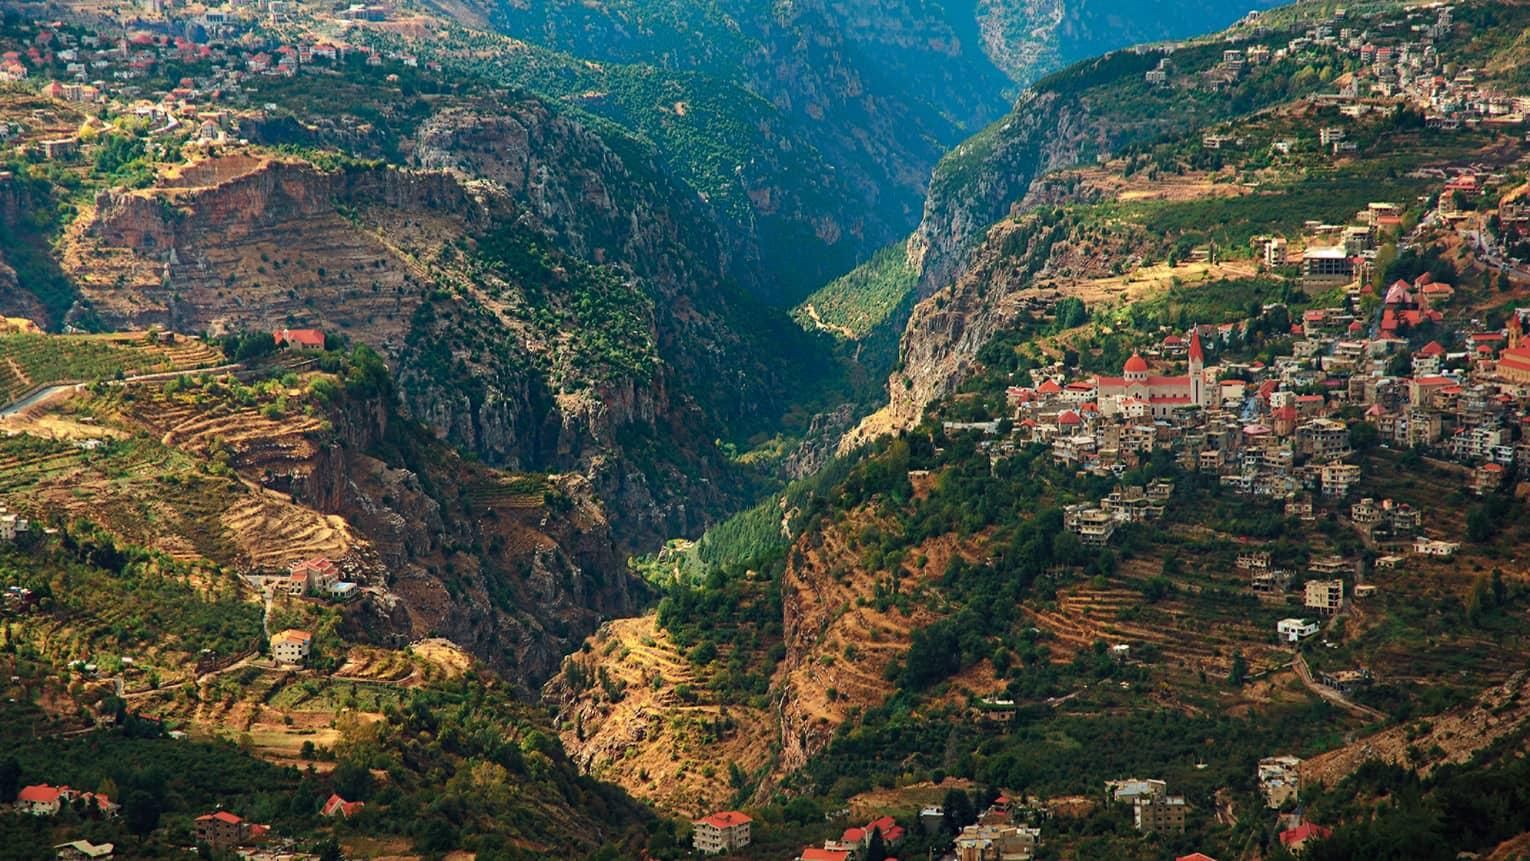 Northern Lebanon